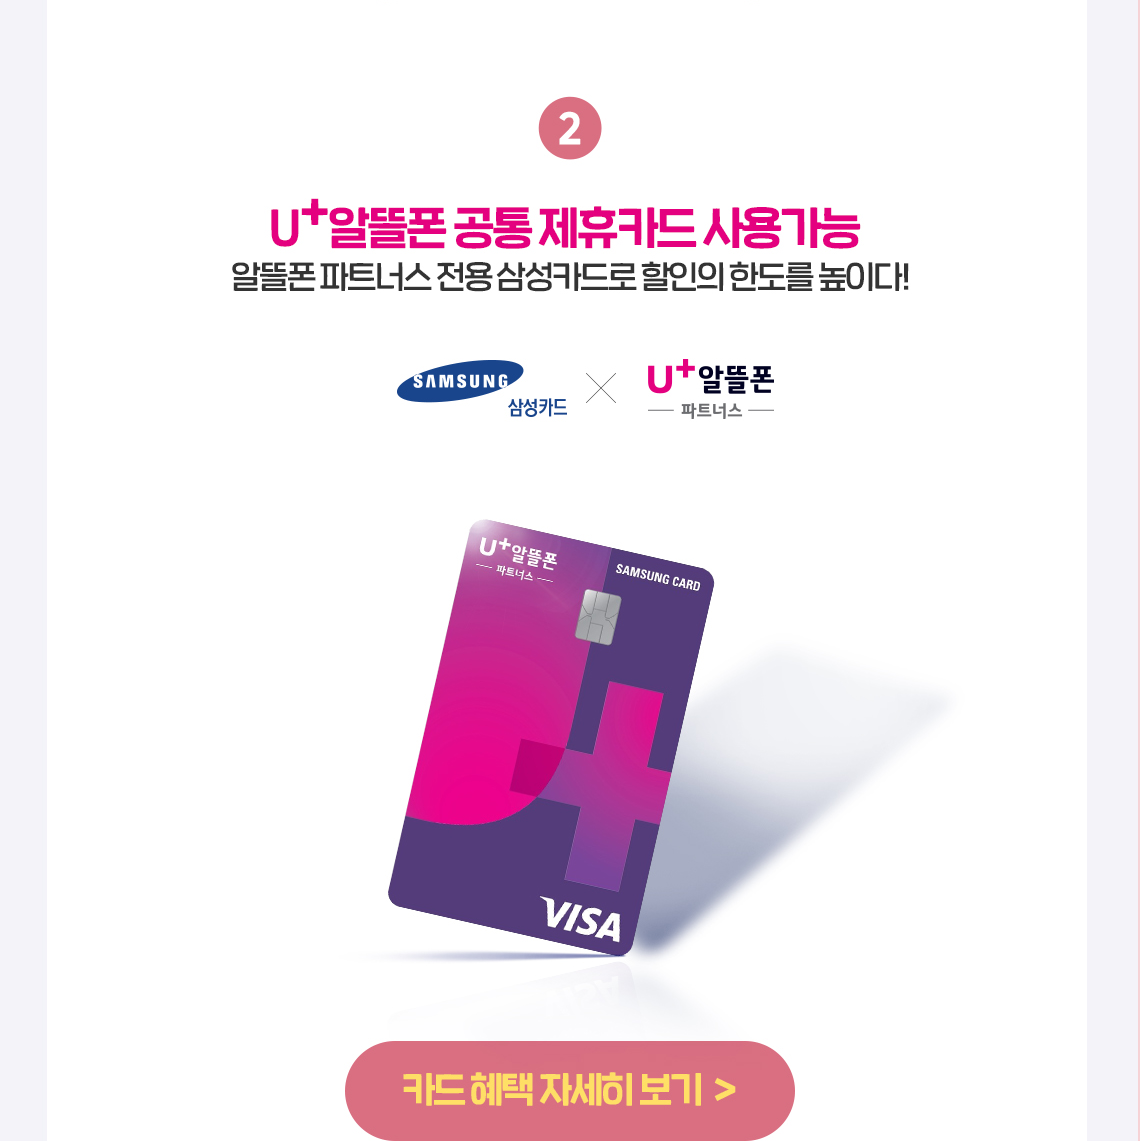 U+알뜰폰 공통 제휴카드 사용가능. 알뜰폰 파트너스 전용 삼성카드로 할인의 한도를 높이다!